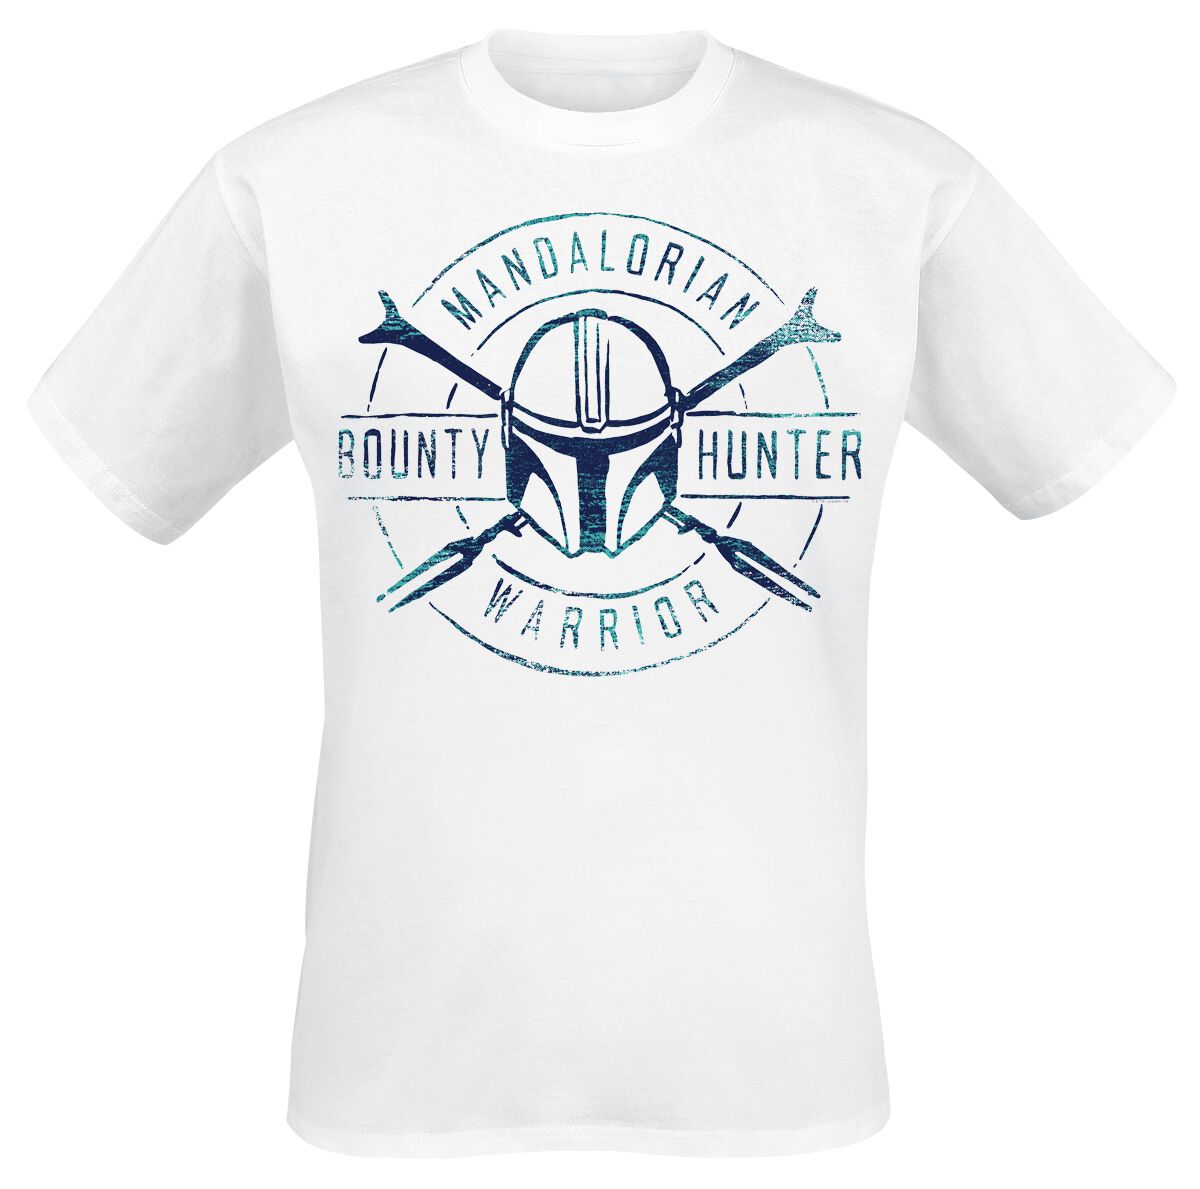 Star Wars T-Shirt - The Mandalorian - Bounty Hunter Warrior - S bis 5XL - für Männer - Größe XXL - weiß  - Lizenzierter Fanartikel von Star Wars